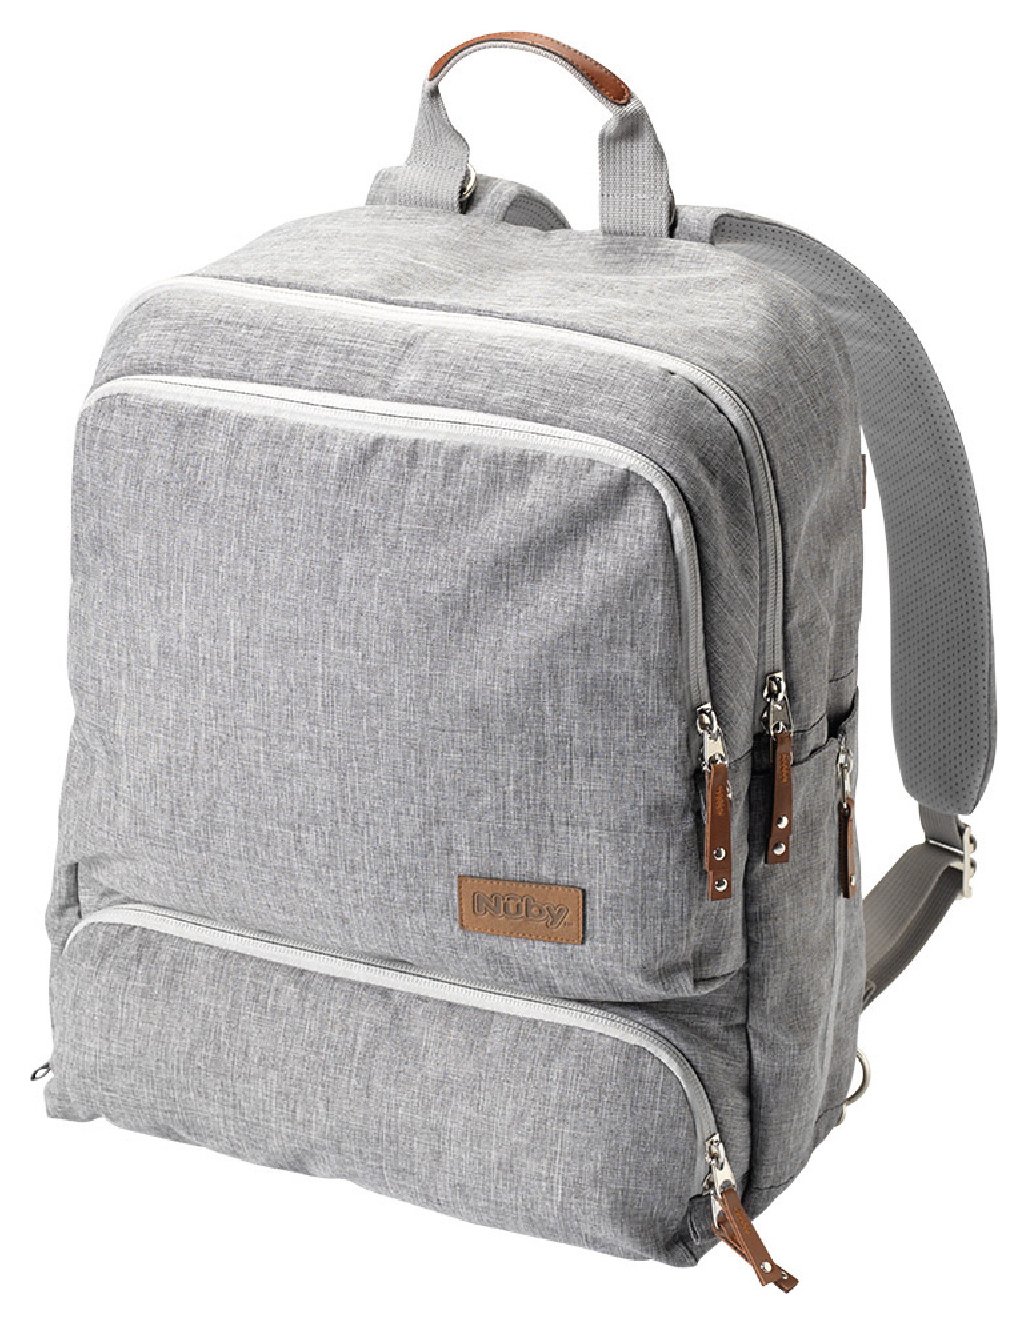 Nuby Backpack Changing Bag